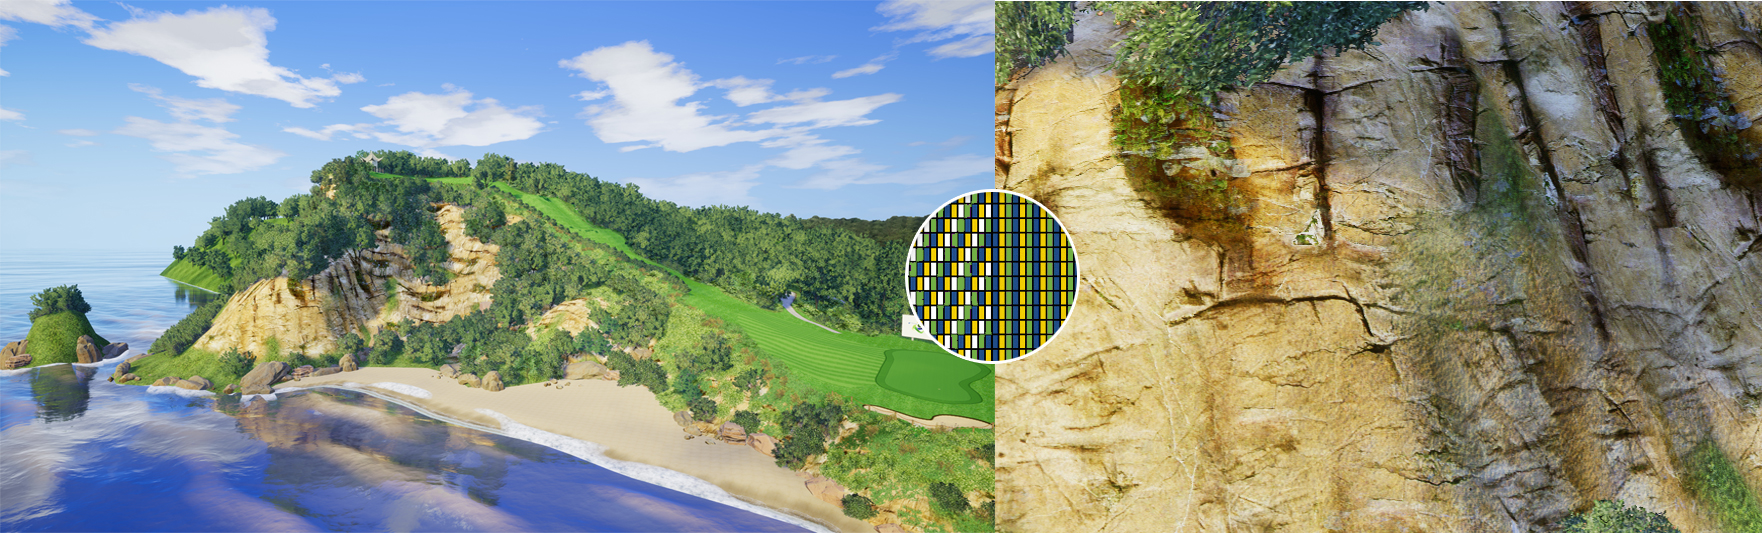 高尔夫模拟系统全场景软件